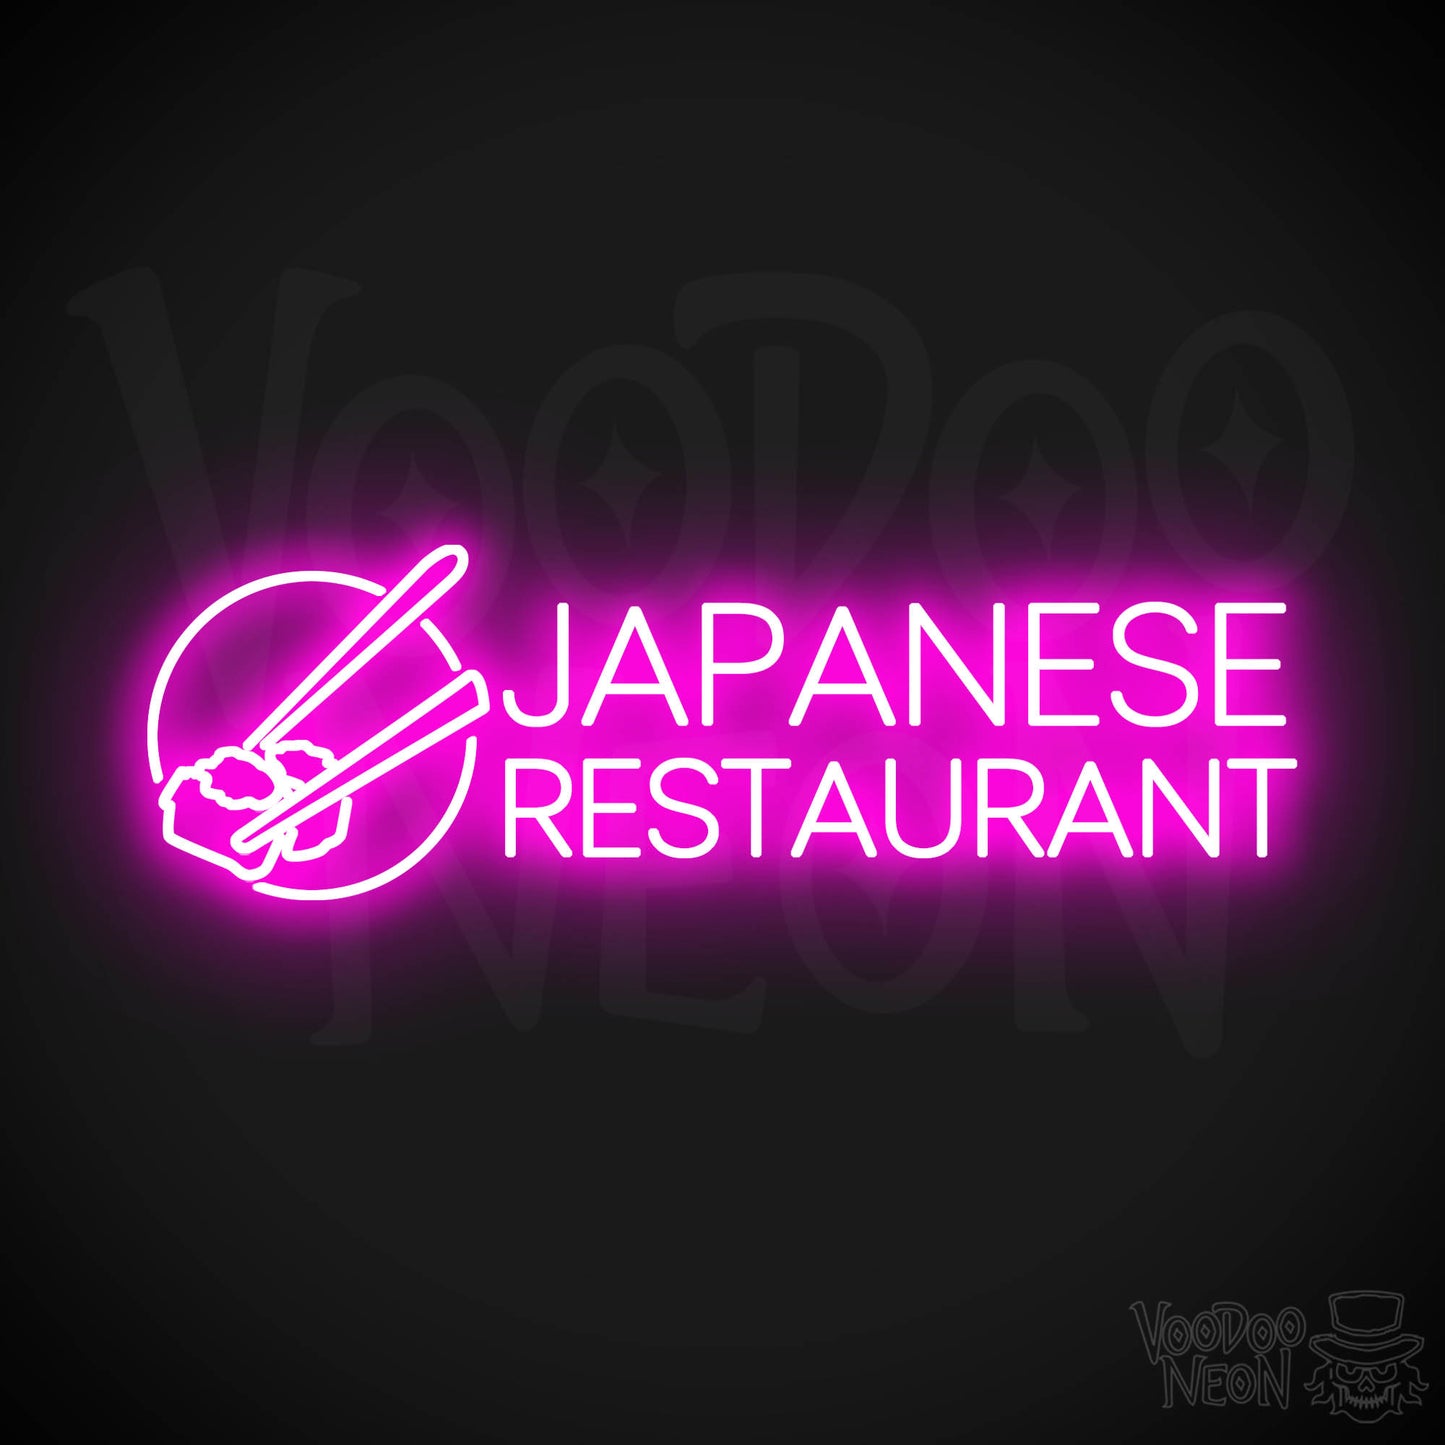 Japanese Restaurant LED Neon - Pink